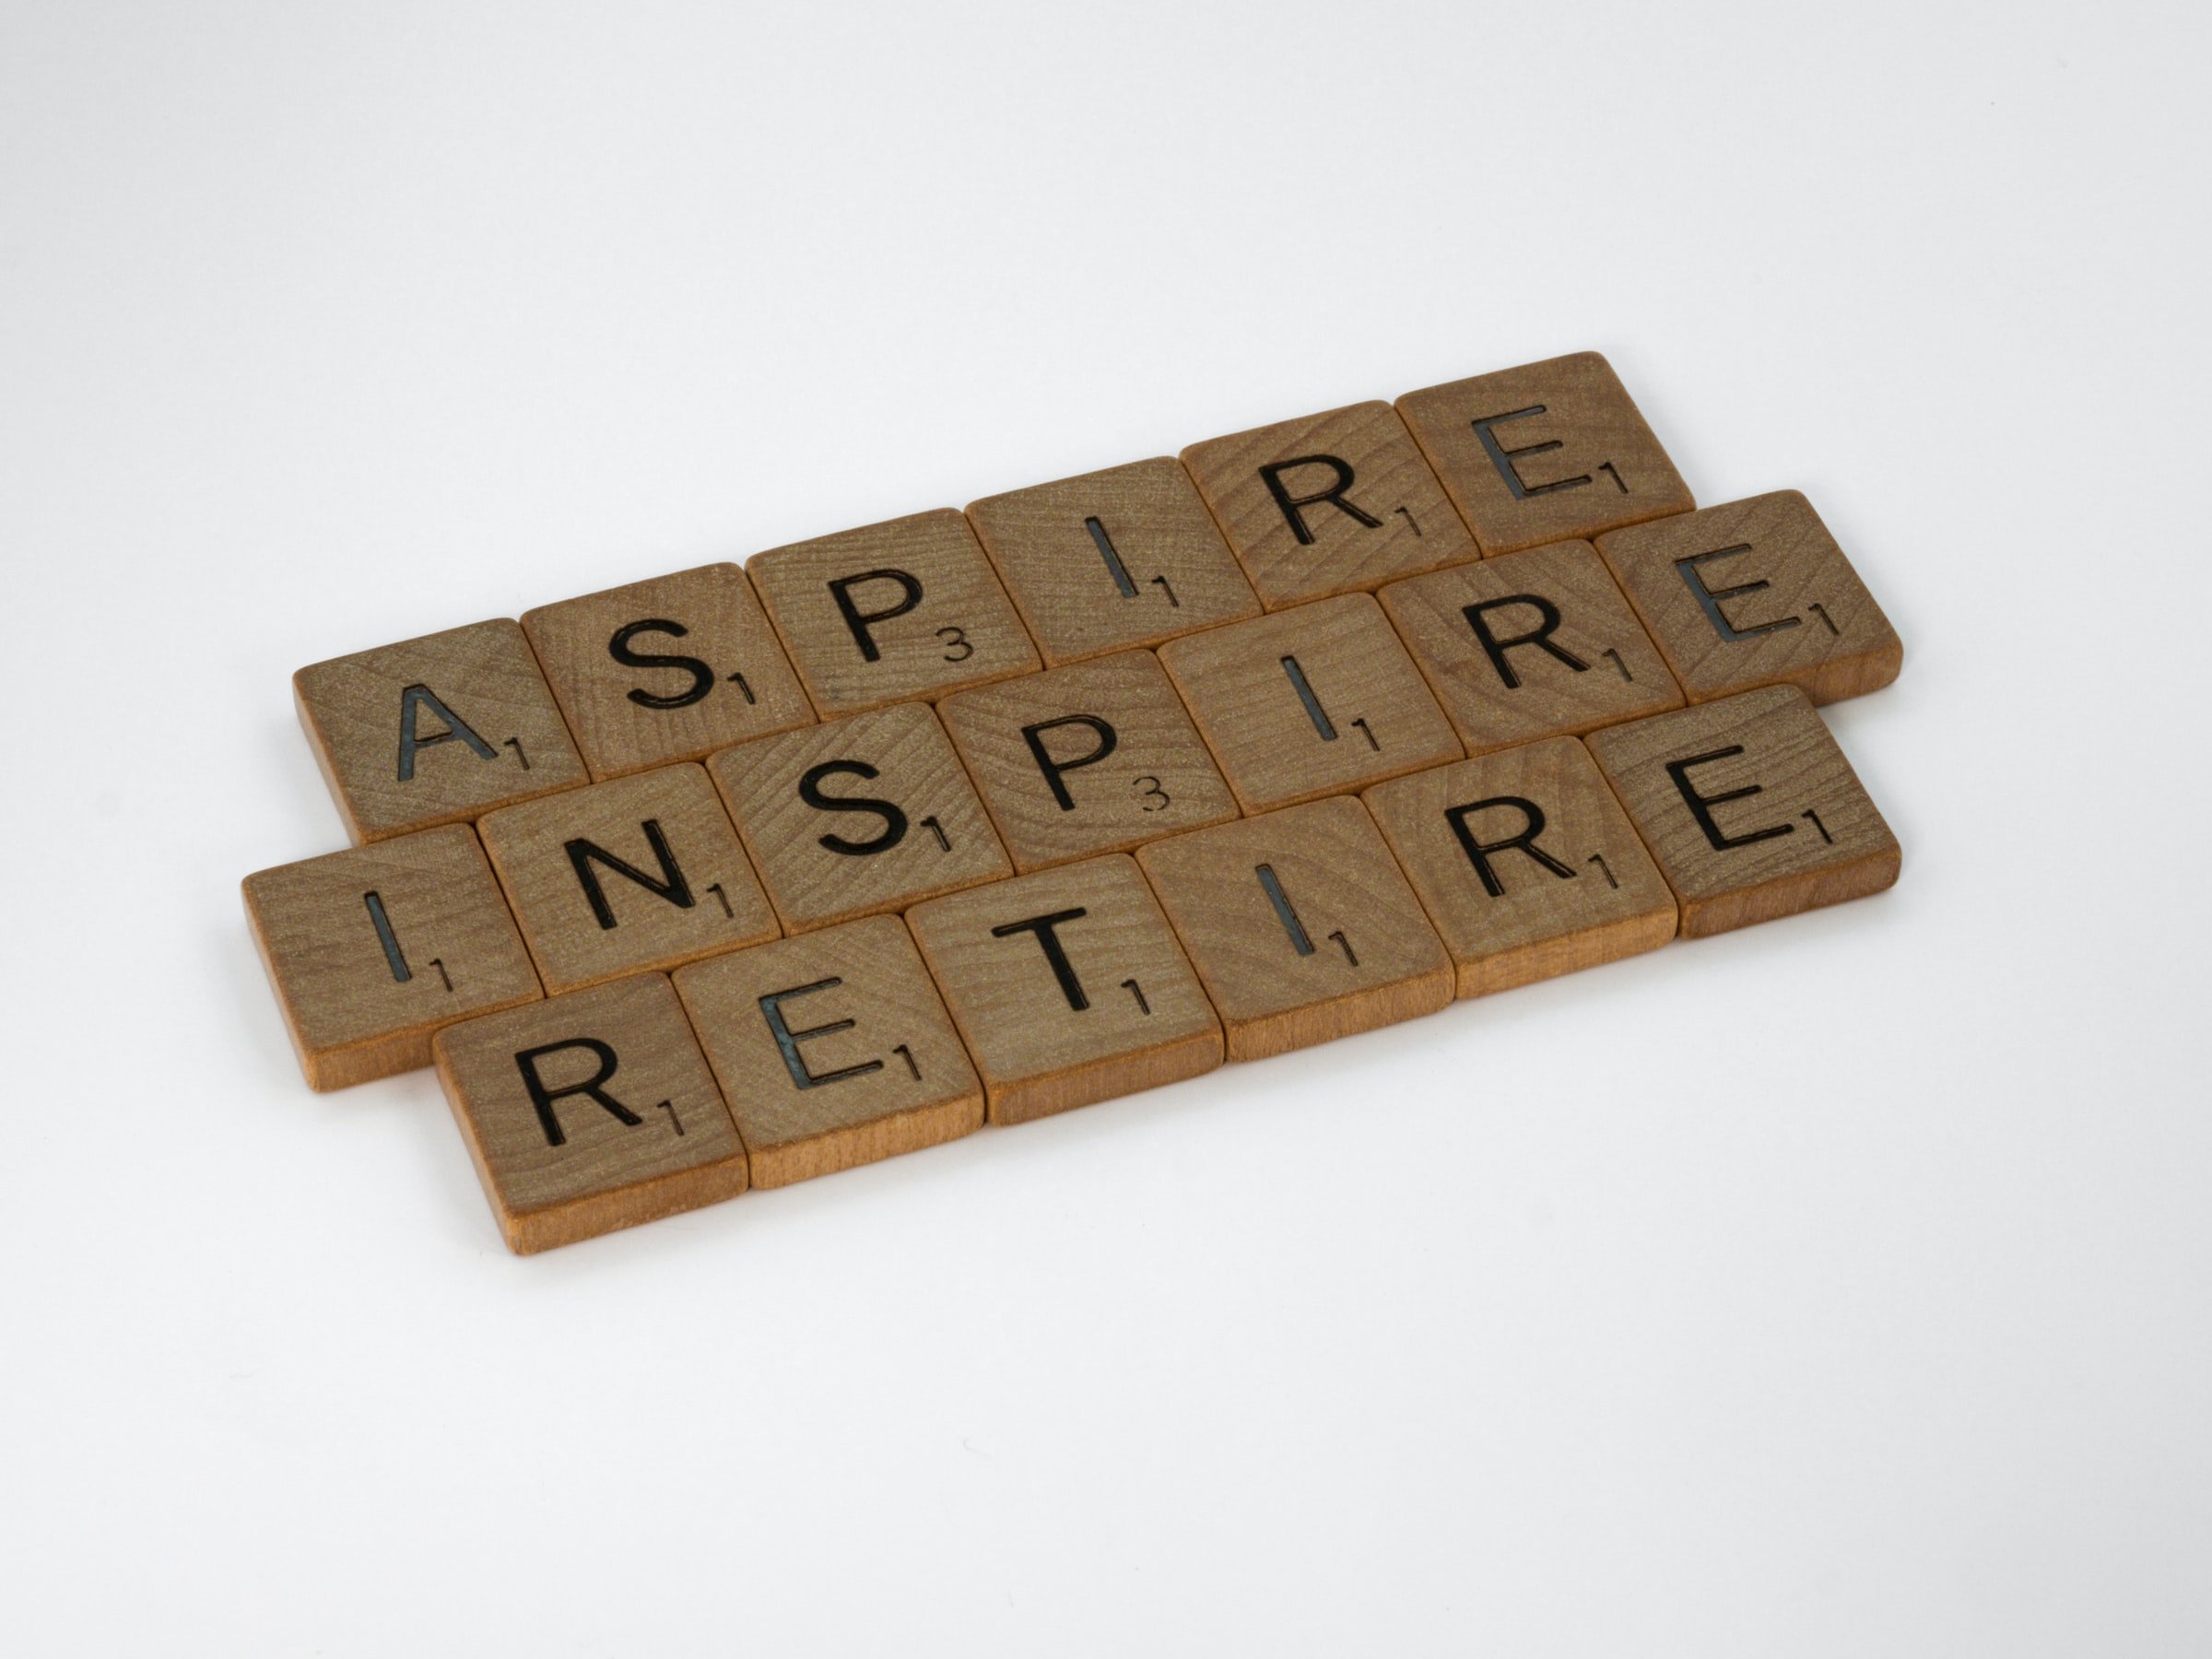 letras formando as palavras: aspire, inspire, retire